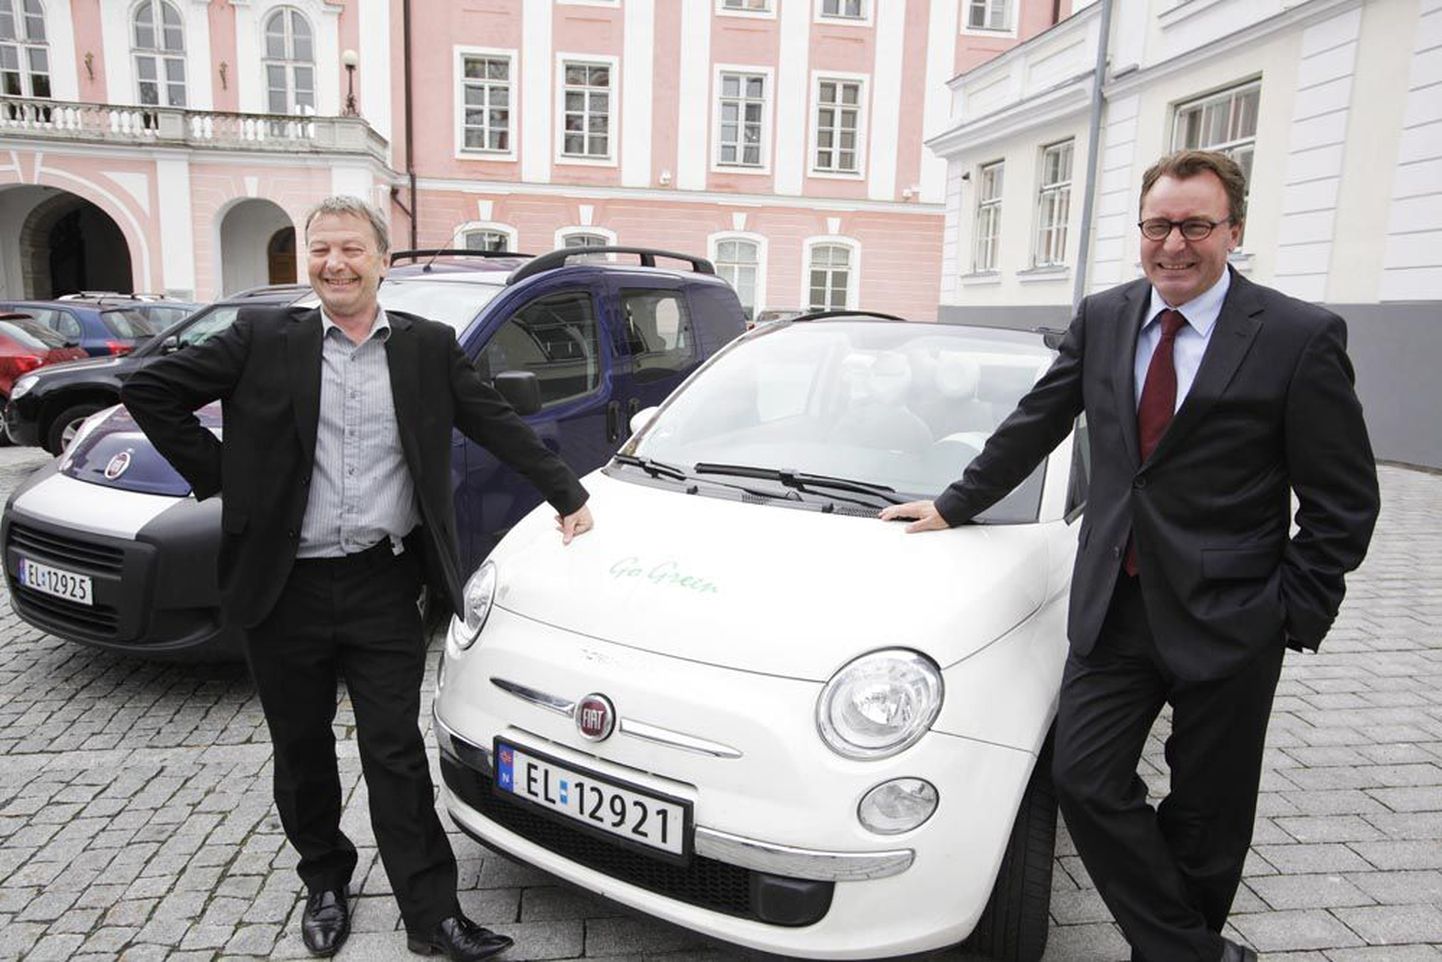 Norra valitsuse elektrifitseerimisnõukogu esimees Rune Haaland (vasakul) ja Taani firma ChoosEV nõukogu juht Henrik Isaksen tõdesid Tallinnas käies, et elektriautod on mõeldud eelkõige 
ikkagi linnas liikumiseks.